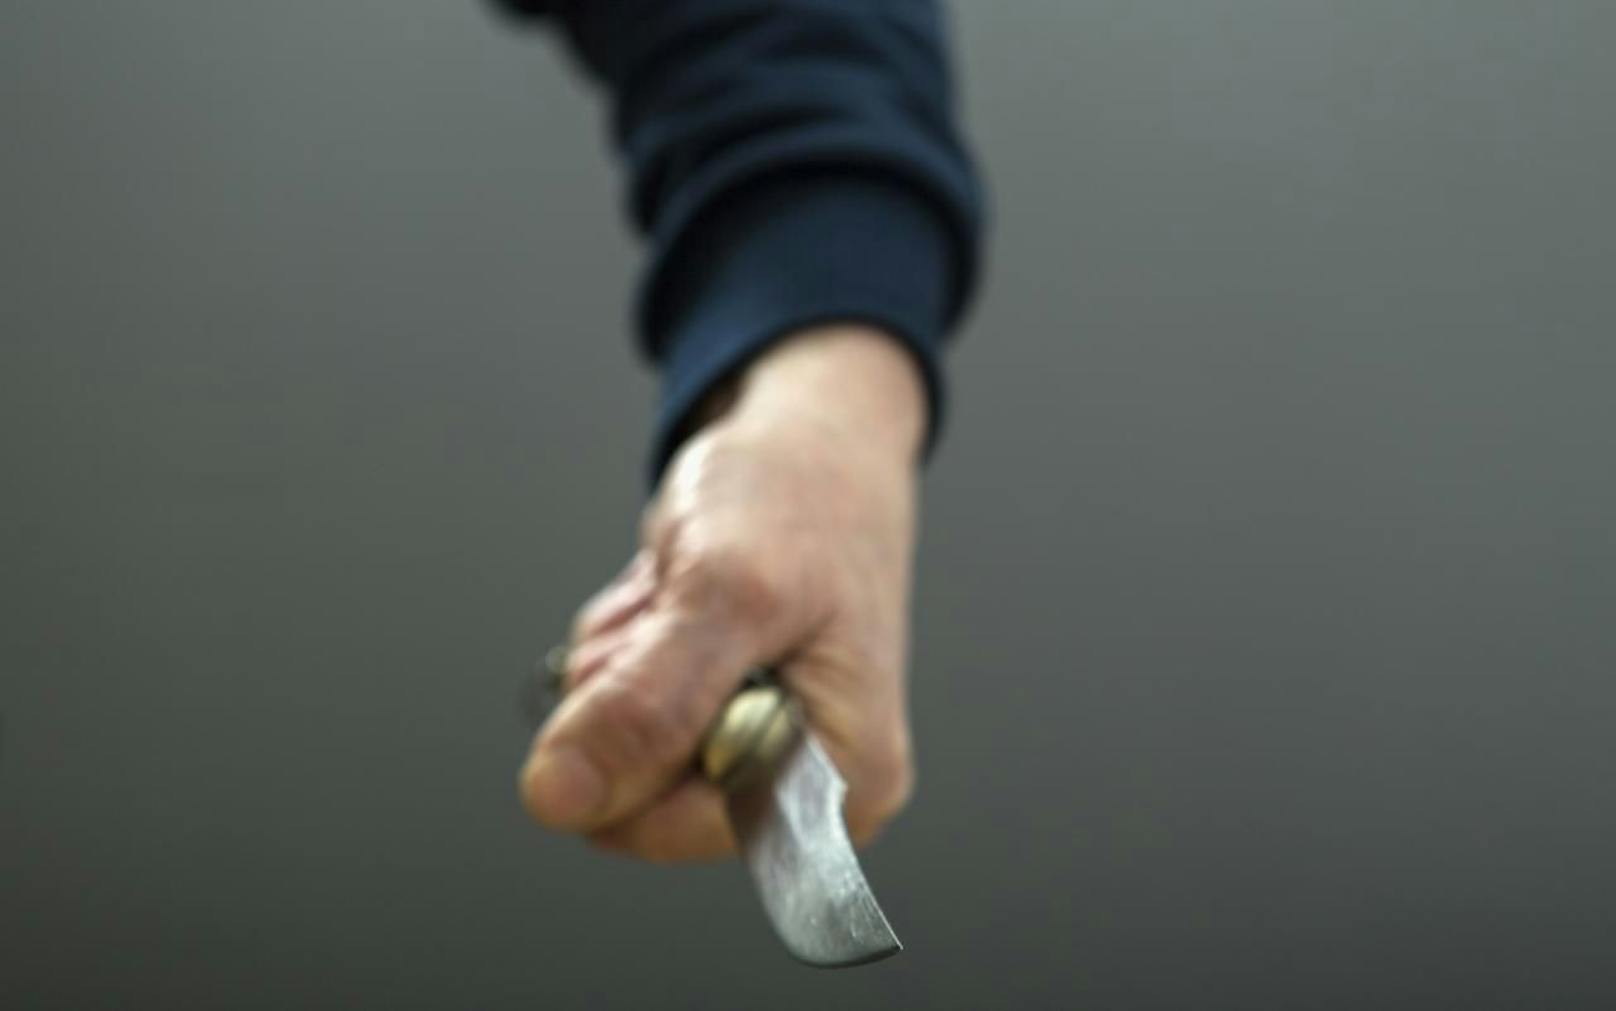 Einer der Täter hielt ein Messer in der Hand (Symbolbild)